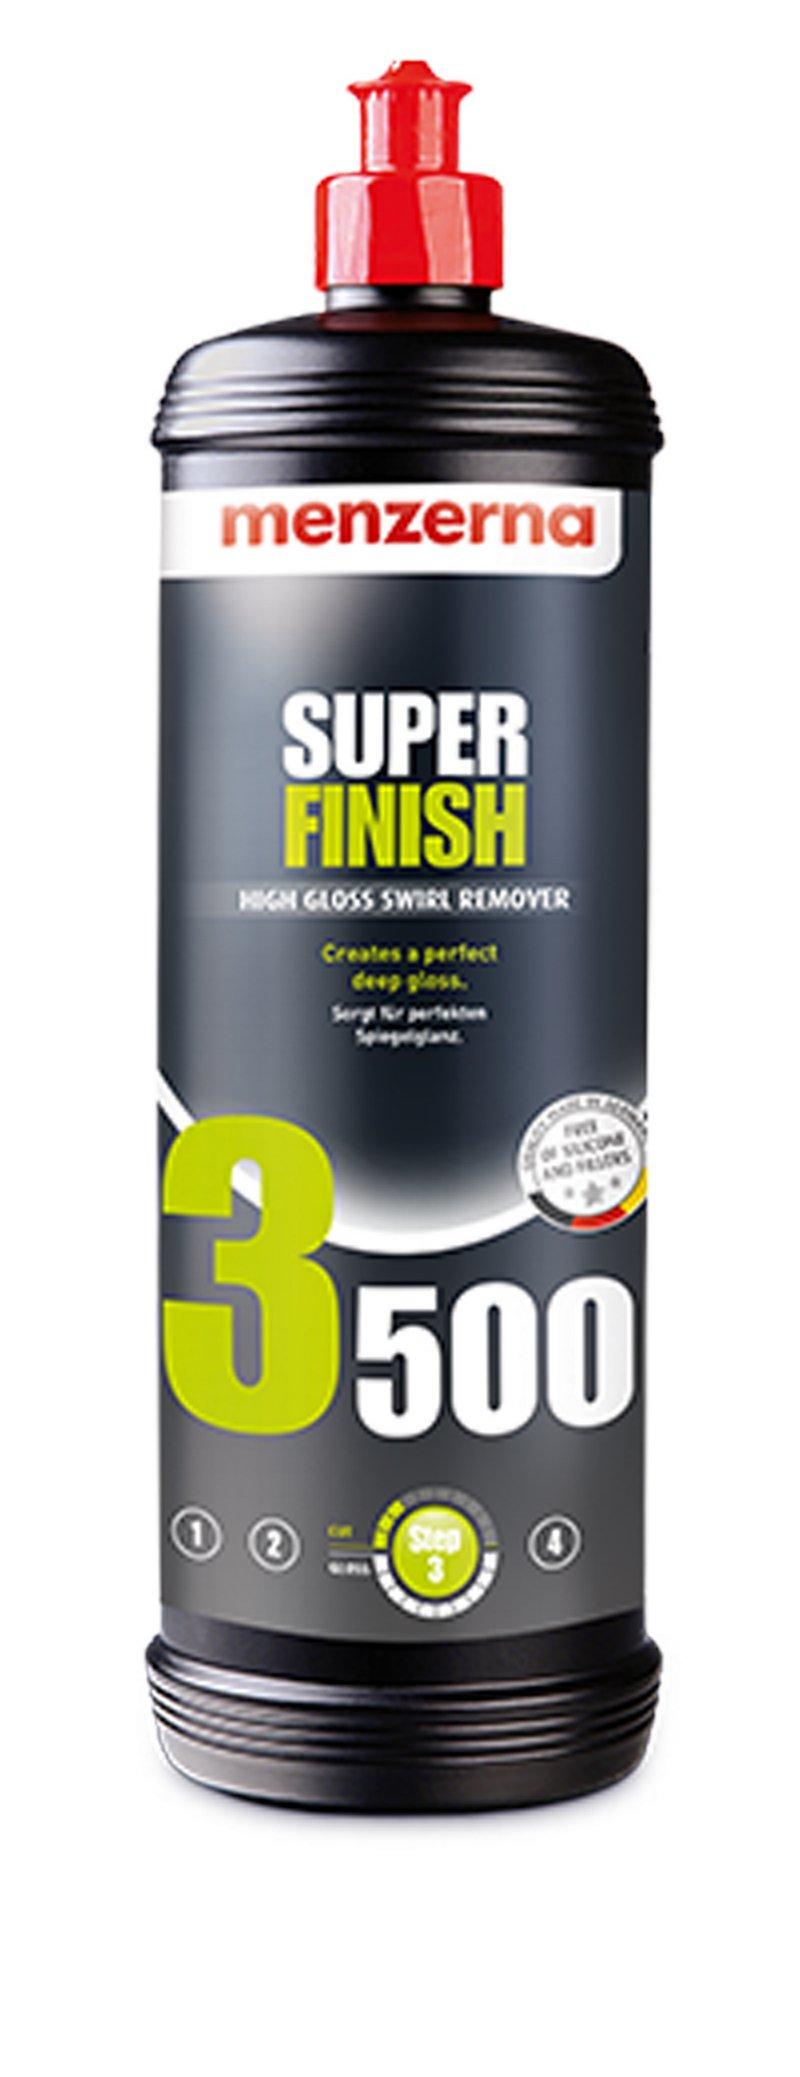 Menzerna Super Finish 3500 (PO106FA) 250ml